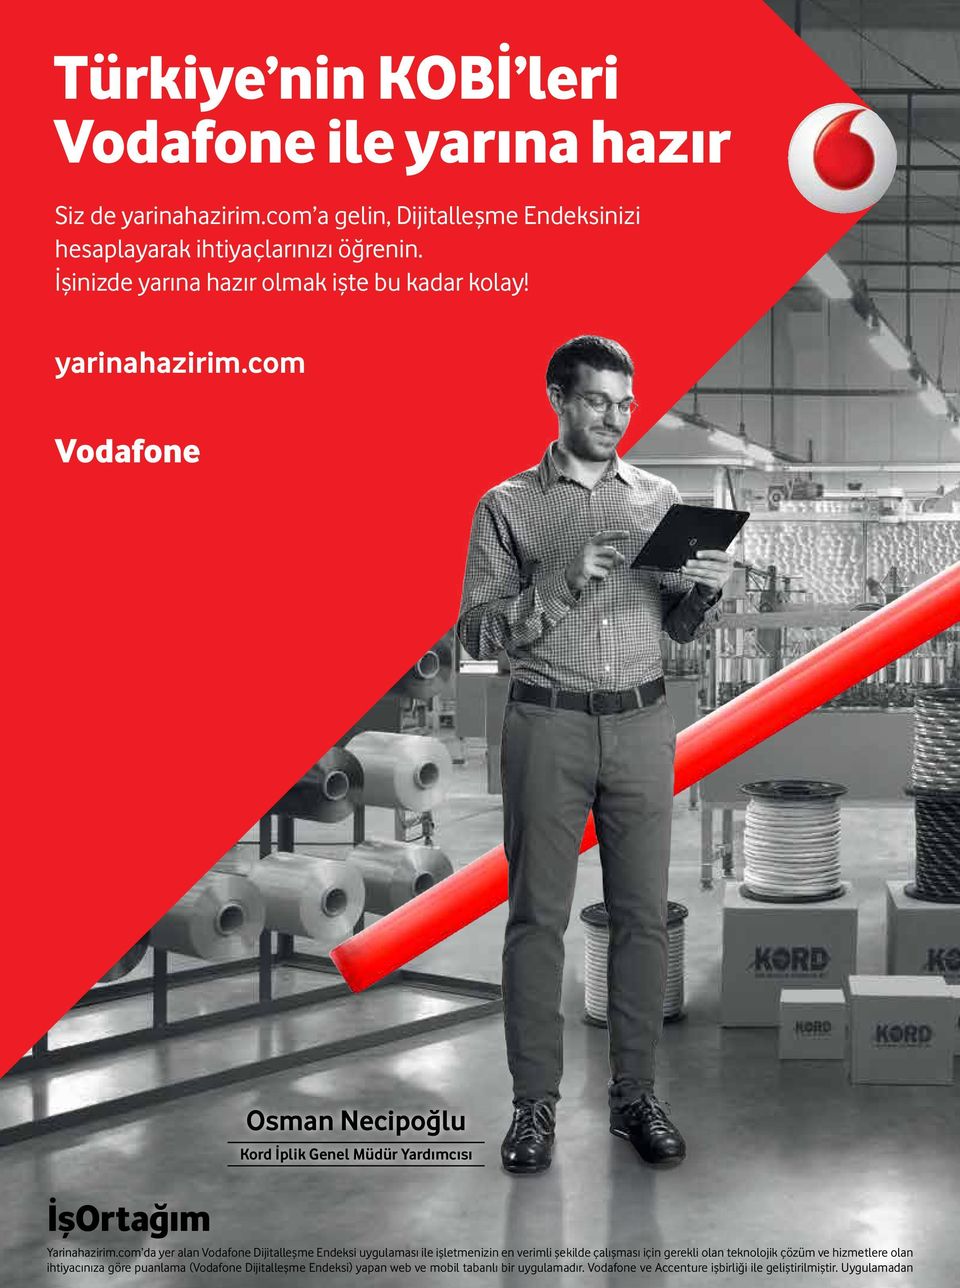 com da yer alan Vodafone Dijitalleşme Endeksi uygulaması ile işletmenizin en verimli şekilde çalışması için gerekli olan teknolojik çözüm ve hizmetlere